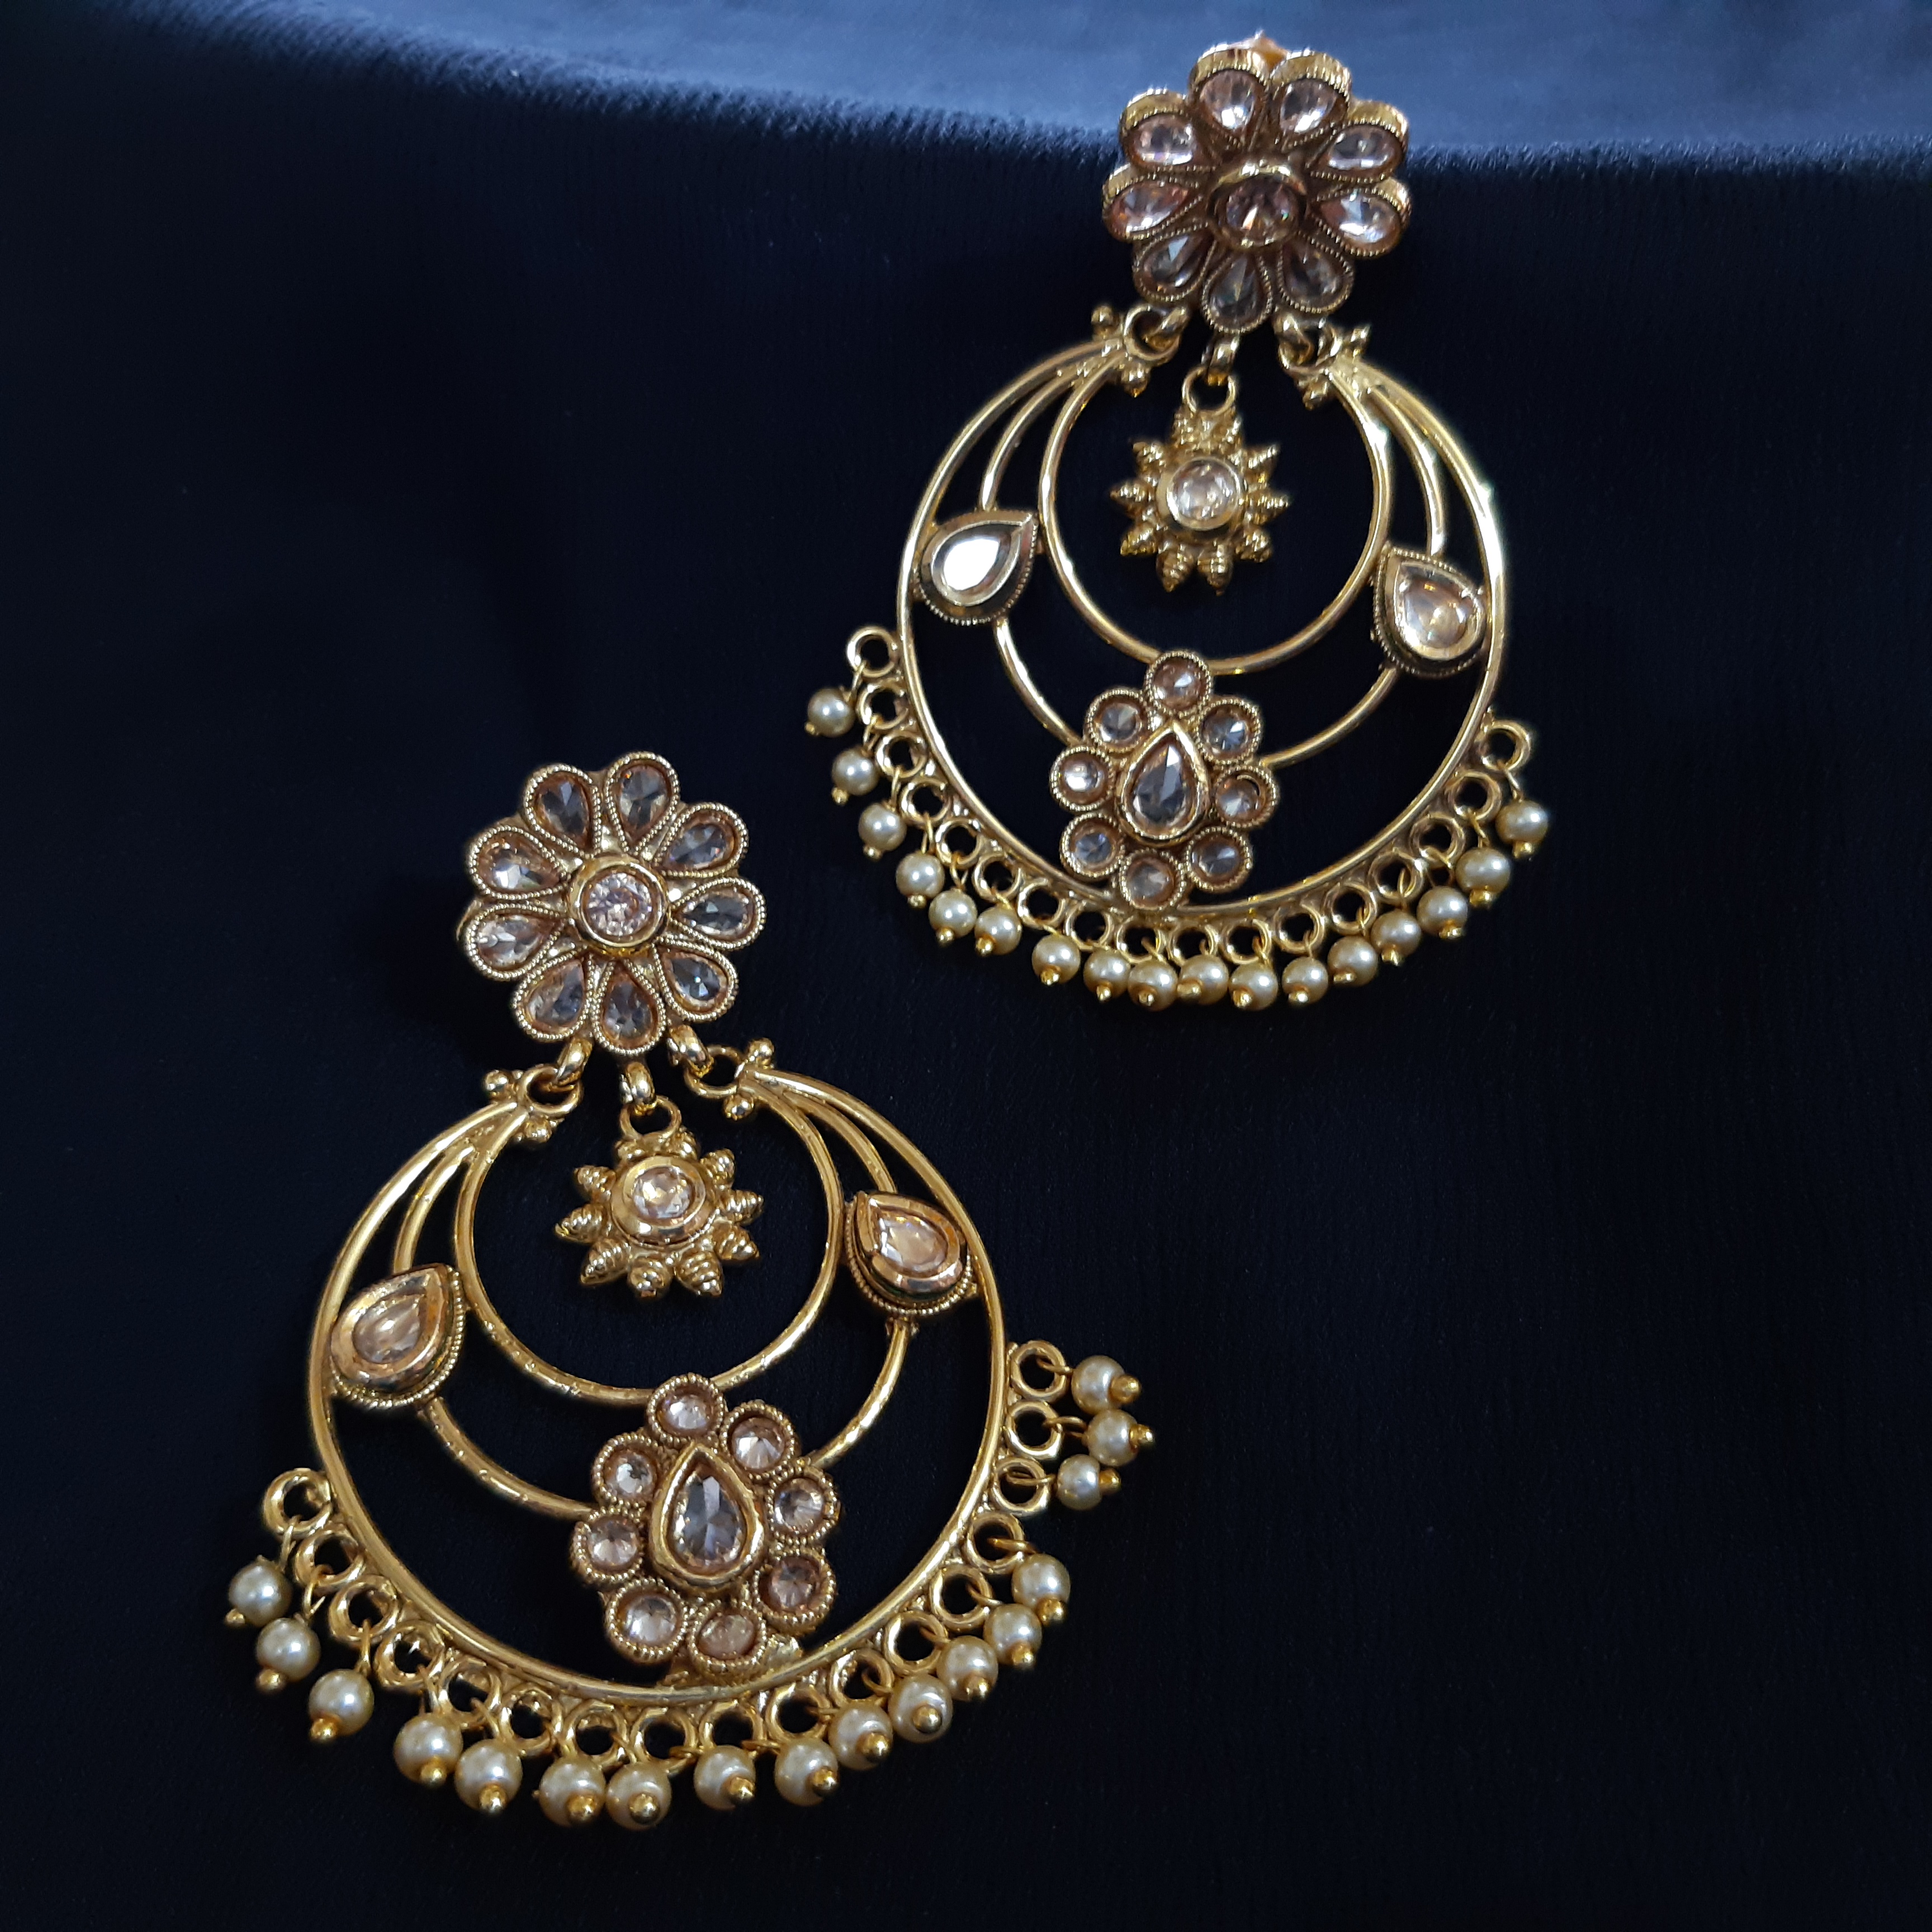 Pearl earrings for women  | IndiHaute | Pearl earrings online, pearl earrings for women, pearl earrings for girls,  pearl earrings with price,  pearl earrings online shopping,  pearl earrings  - GL44008